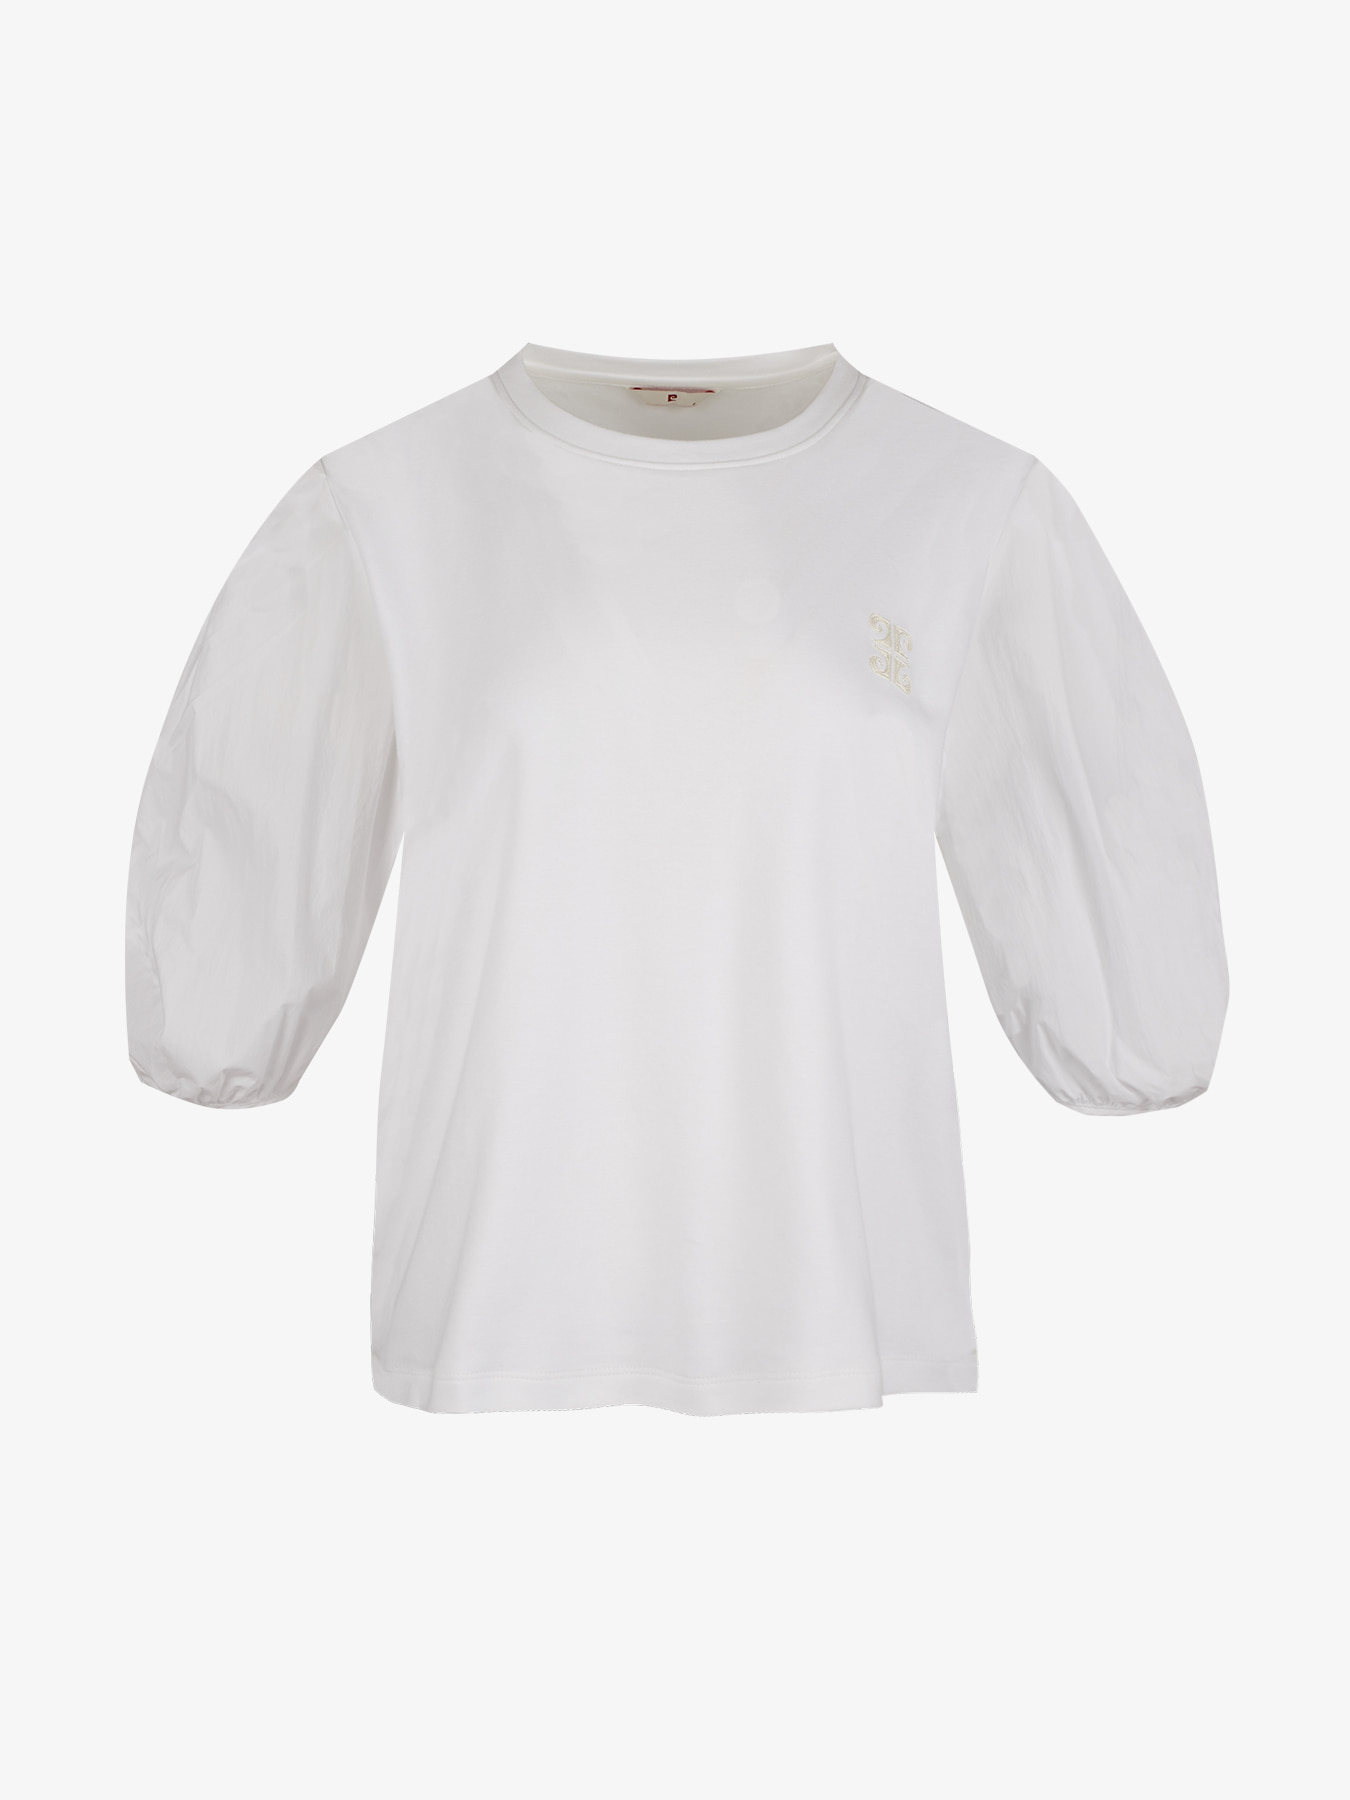 [피에르가르뎅] 우븐배색 체인자수 티셔츠 LOTS1401